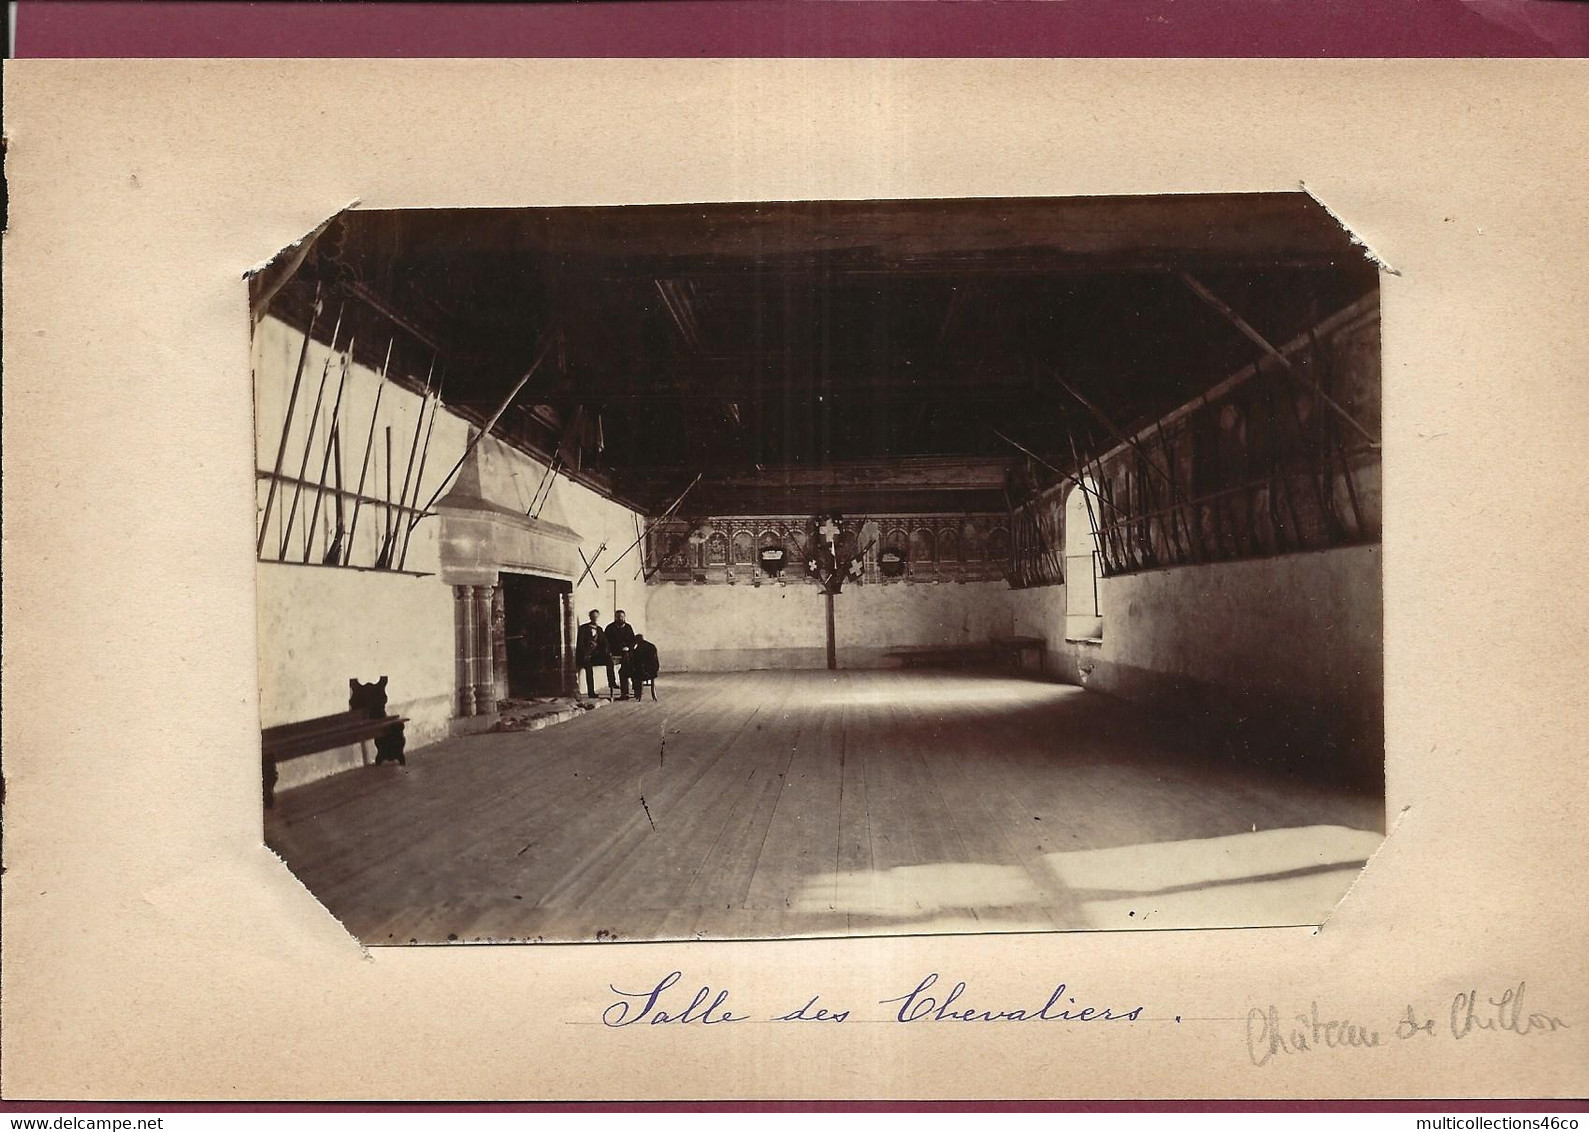 250721 - PHOTO 1890 - SUISSE VAUD RIVIERA PAYS D'ENHAUT VEYTAUX - Château De Chillon Salle Des Chevaliers - Veytaux